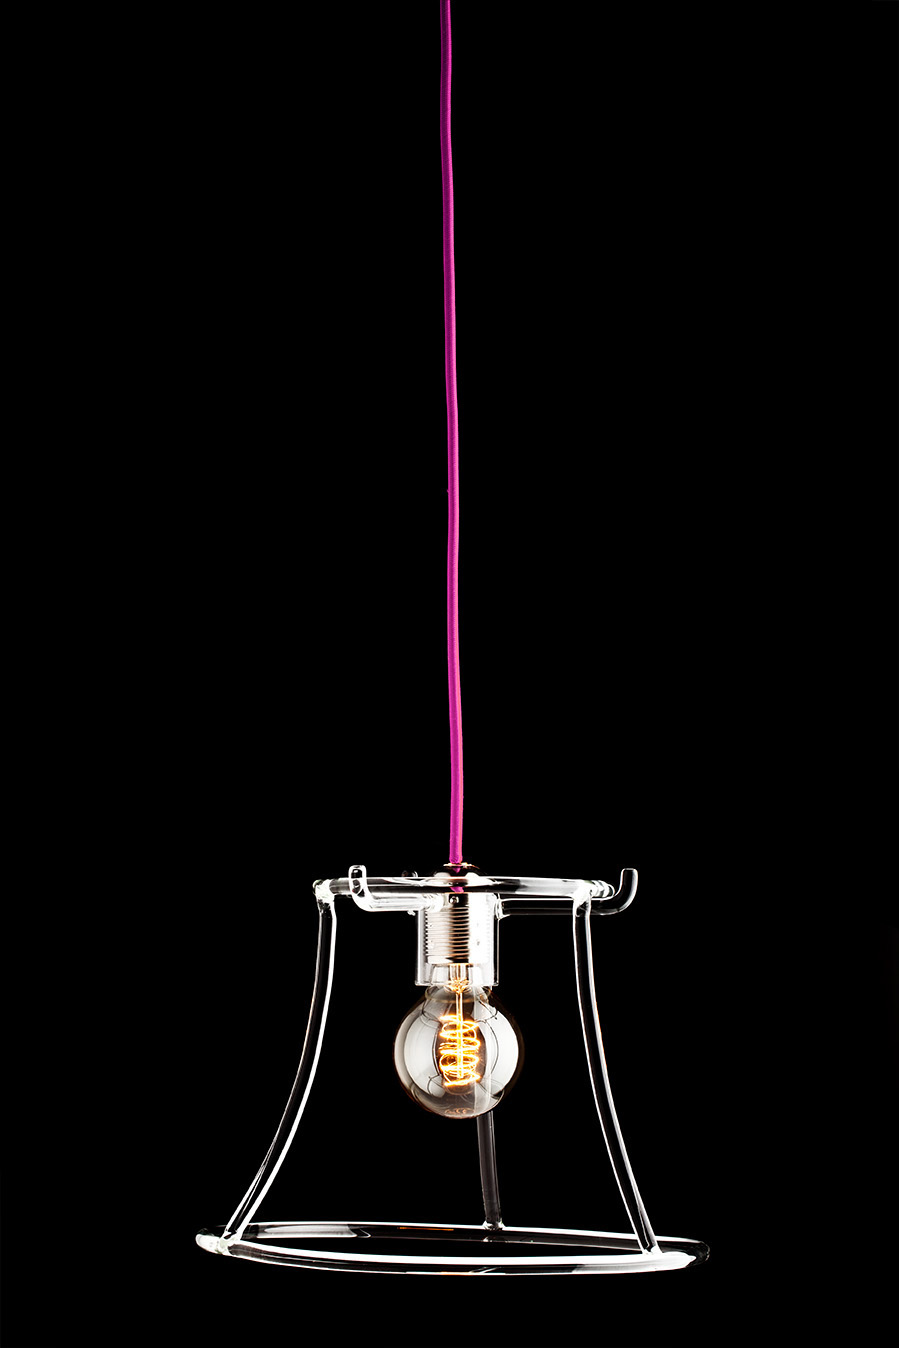 Silhouette Lamp by Giorgio Bonaguro